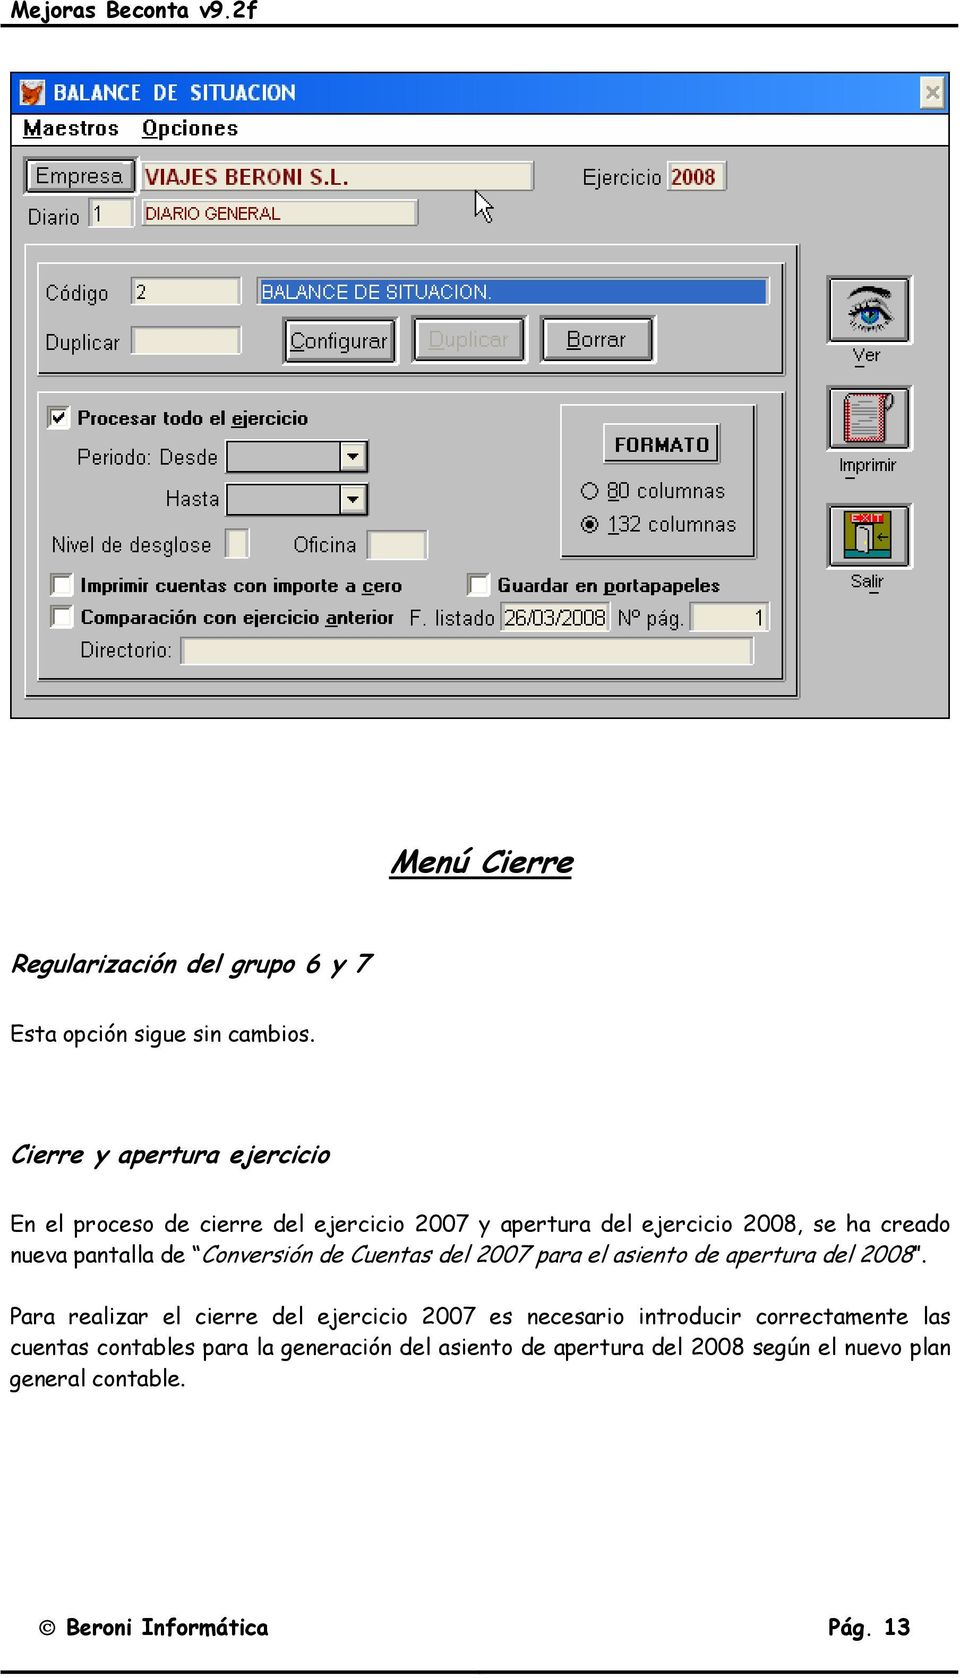 pantalla de Conversión de Cuentas del 2007 para el asiento de apertura del 2008.